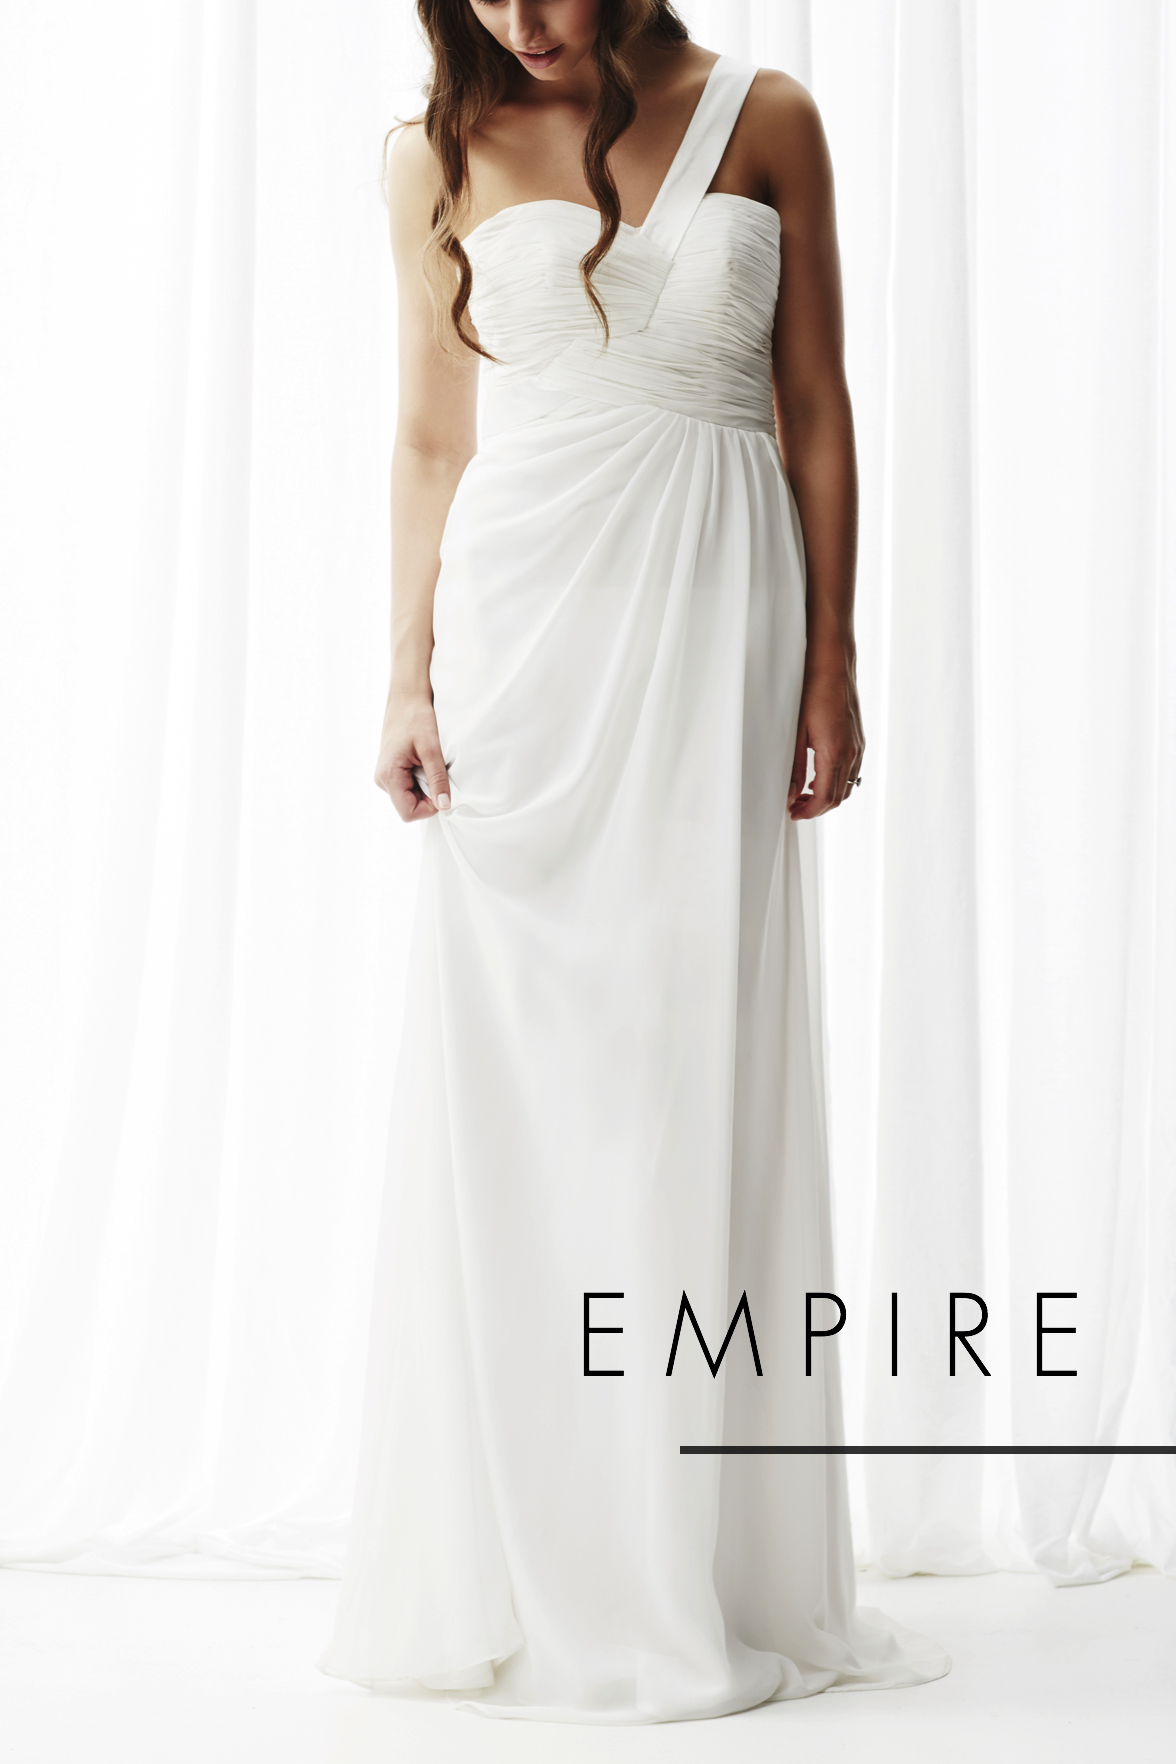 Empire Dresses